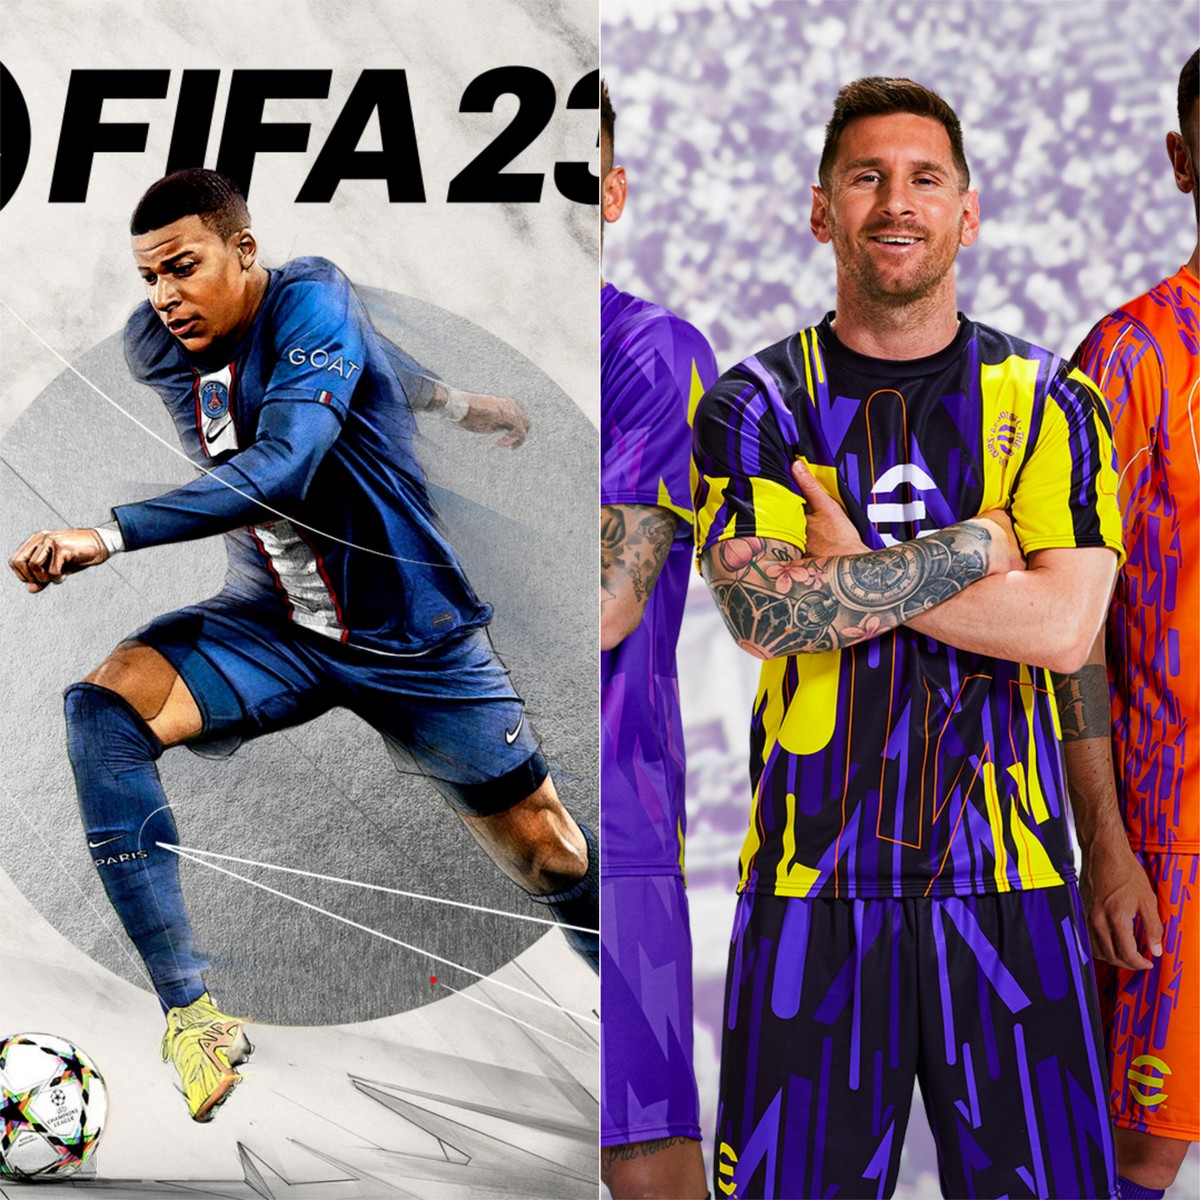 FIFA 23 é o jogo mais vendido em Portugal em 2023